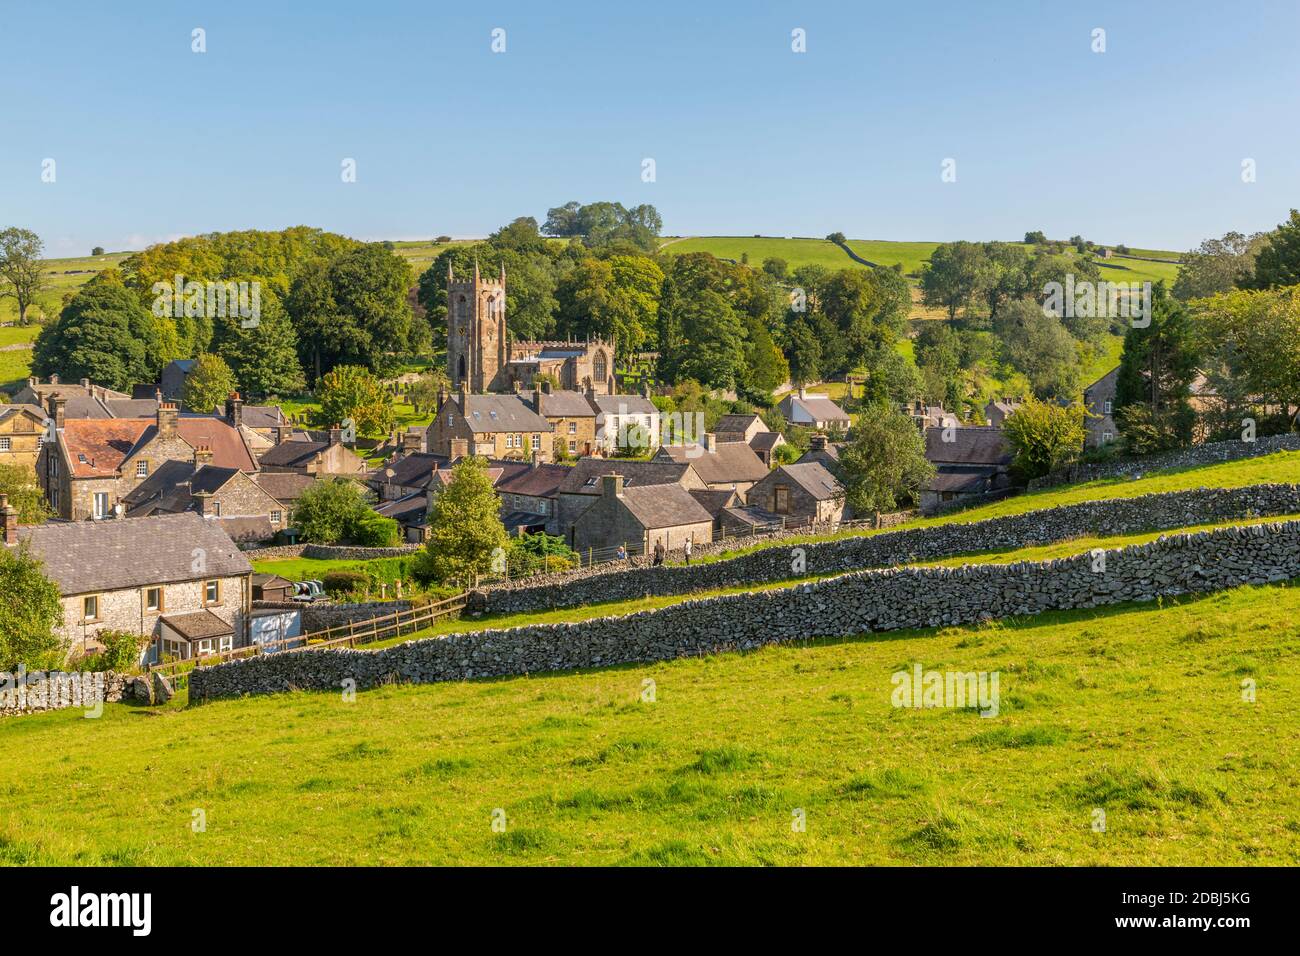 Vista della chiesa del villaggio, cottage e muri in pietra a secco, Hartington, Peak District National Park, Derbyshire, Inghilterra, Regno Unito, Europa Foto Stock